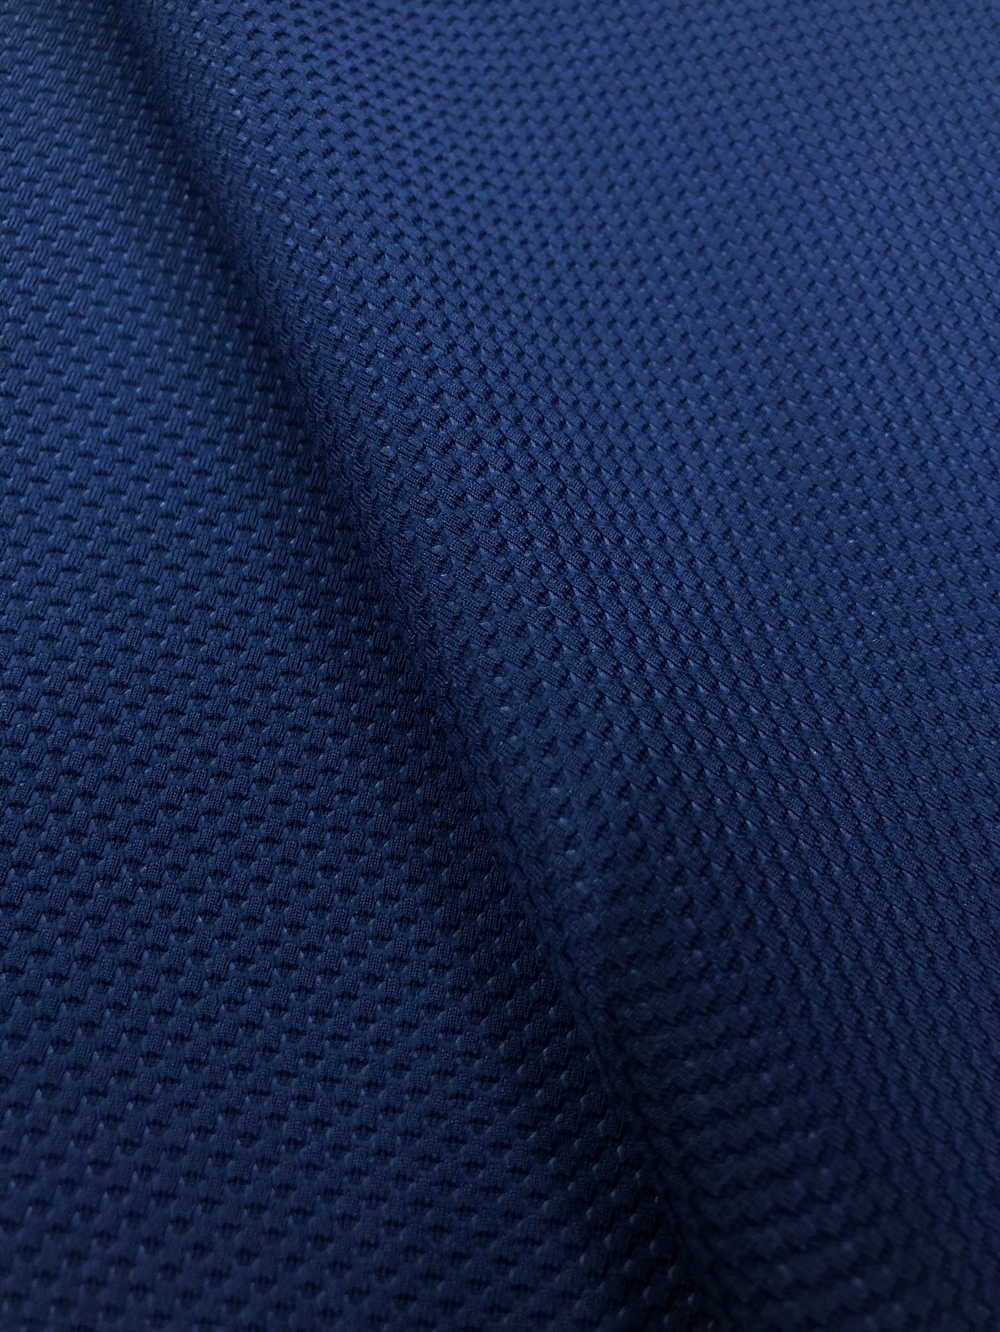 Ткань трикотаж Лакоста крупная, цв. Темно-синий арт. 327010